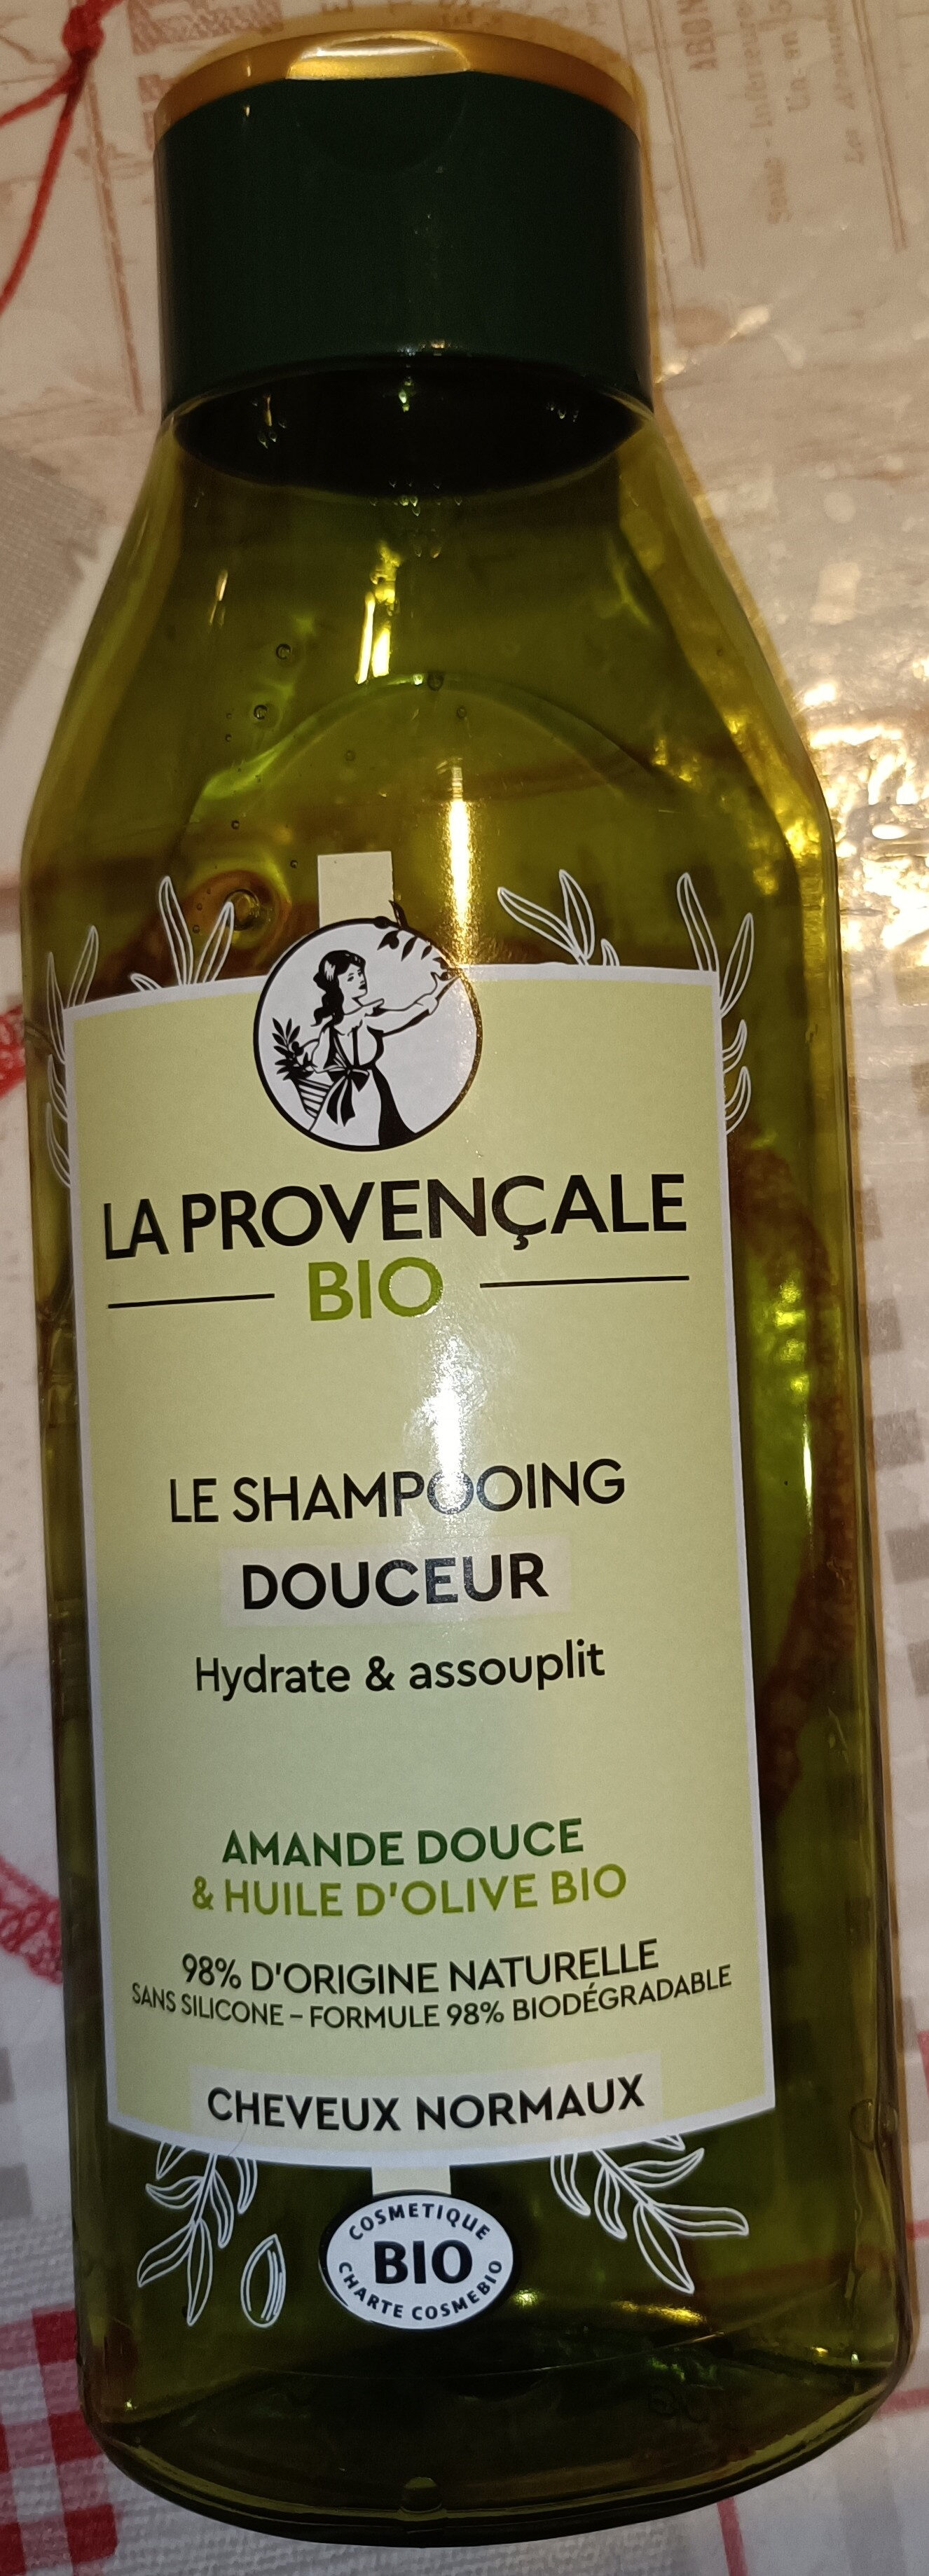 Le shampooing douceur - Produit - fr